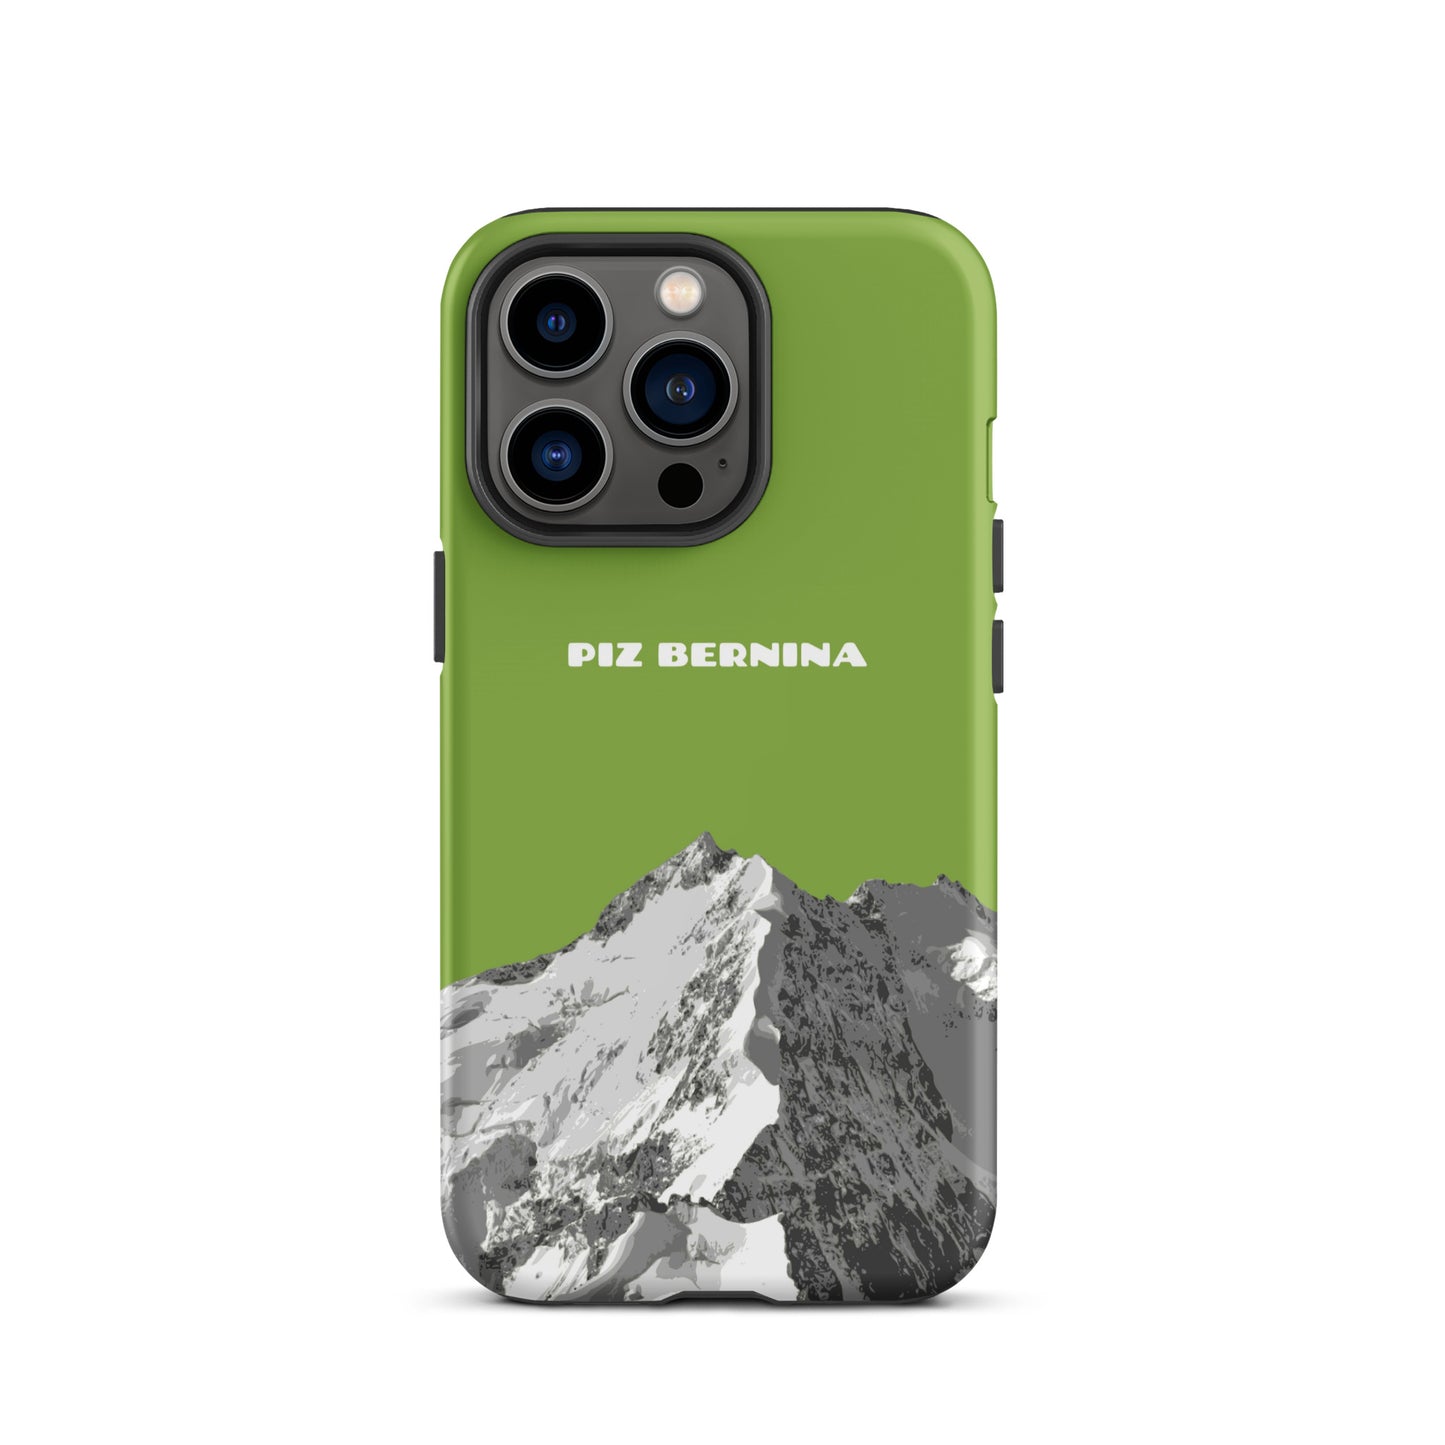 Hülle für das iPhone 13 Pro von Apple in der Farbe Gelbgrün, dass den Piz Bernina in Graubünden zeigt.